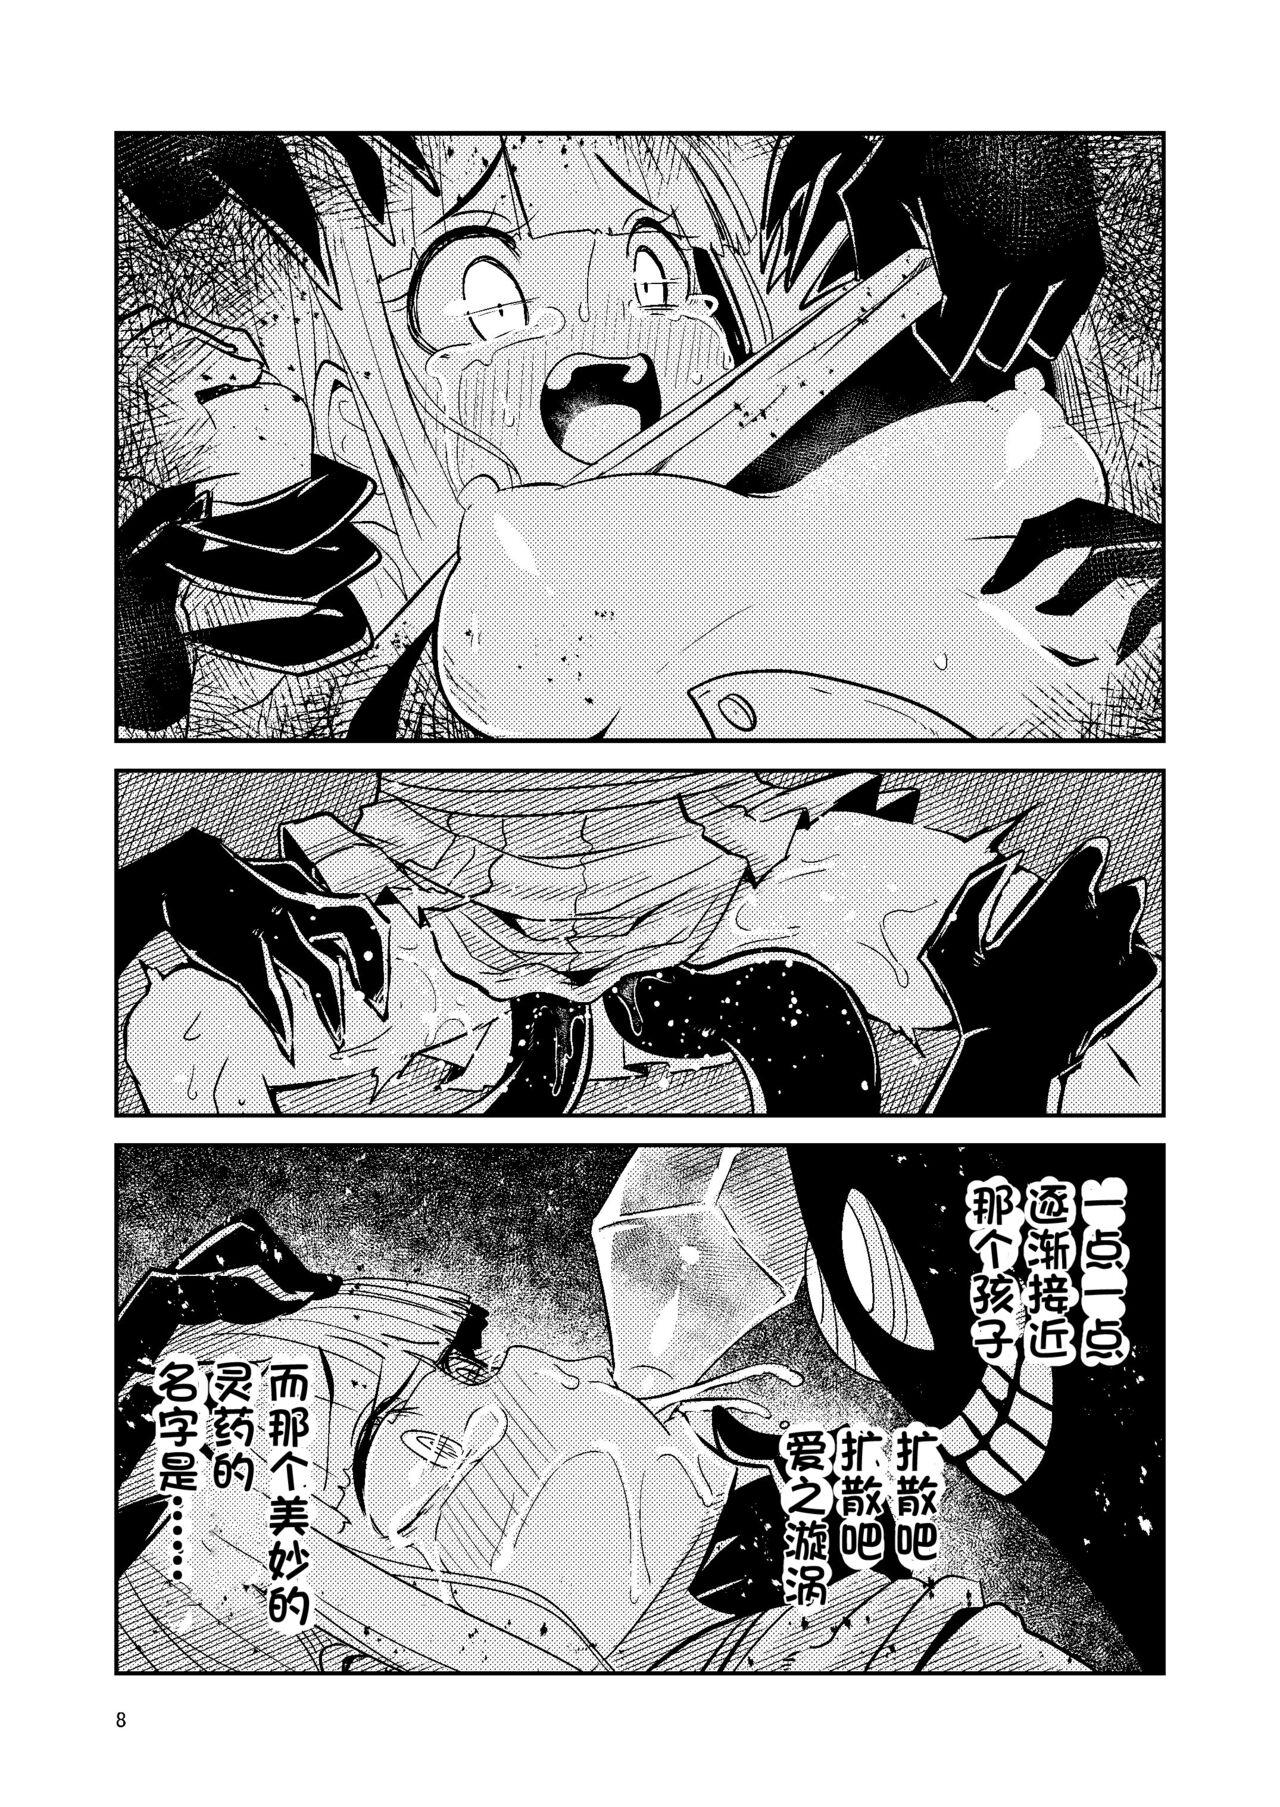 Transexual Riyuriyu Risugureho no Uwasa 3 - Puella magi madoka magica side story magia record Office - Page 8